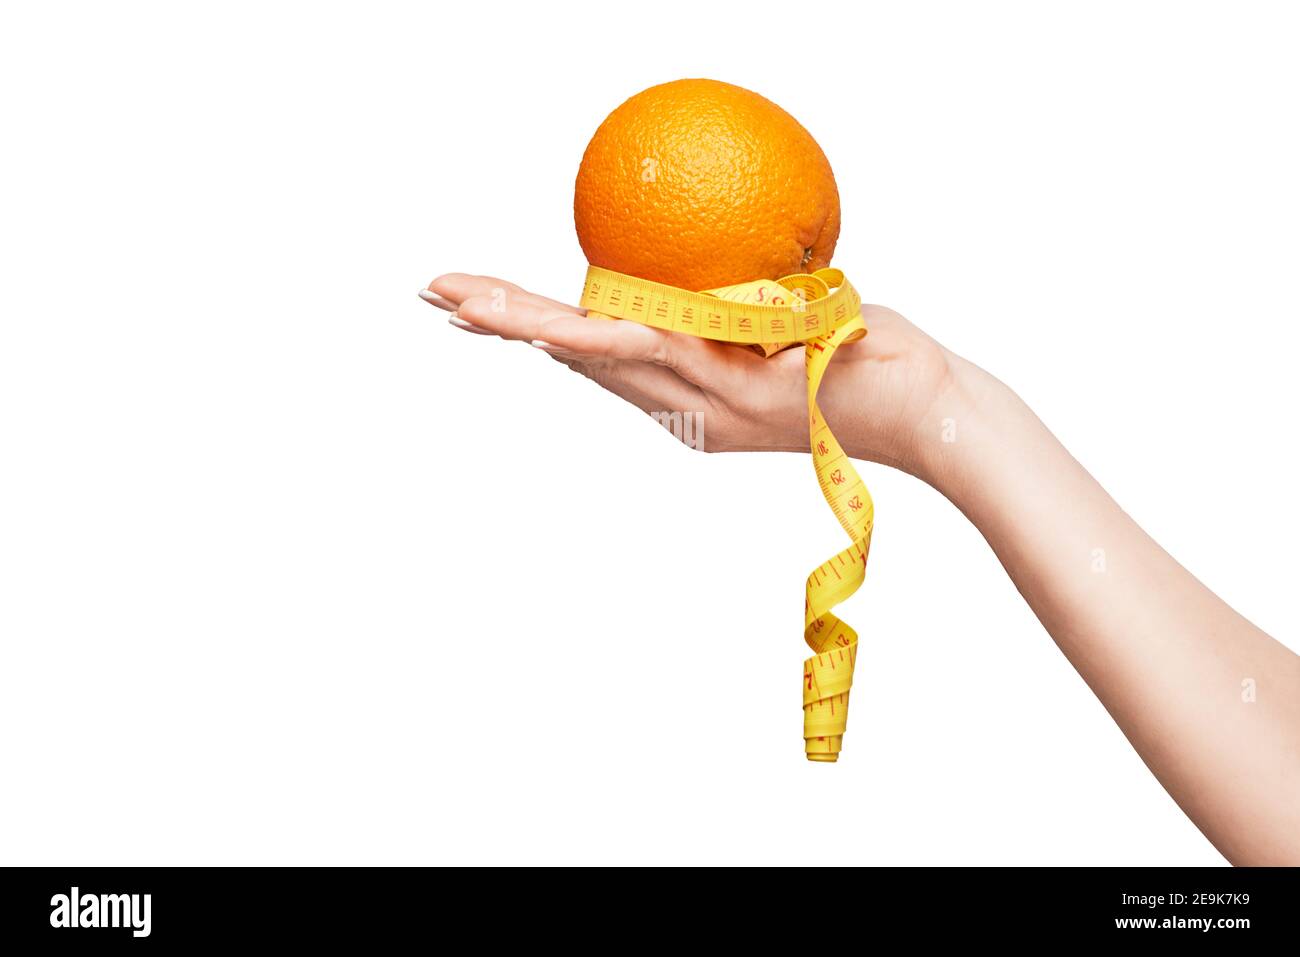 Tenere a mano frutta arancione organica fresca e nastro di misurazione isolato su sfondo bianco Foto Stock